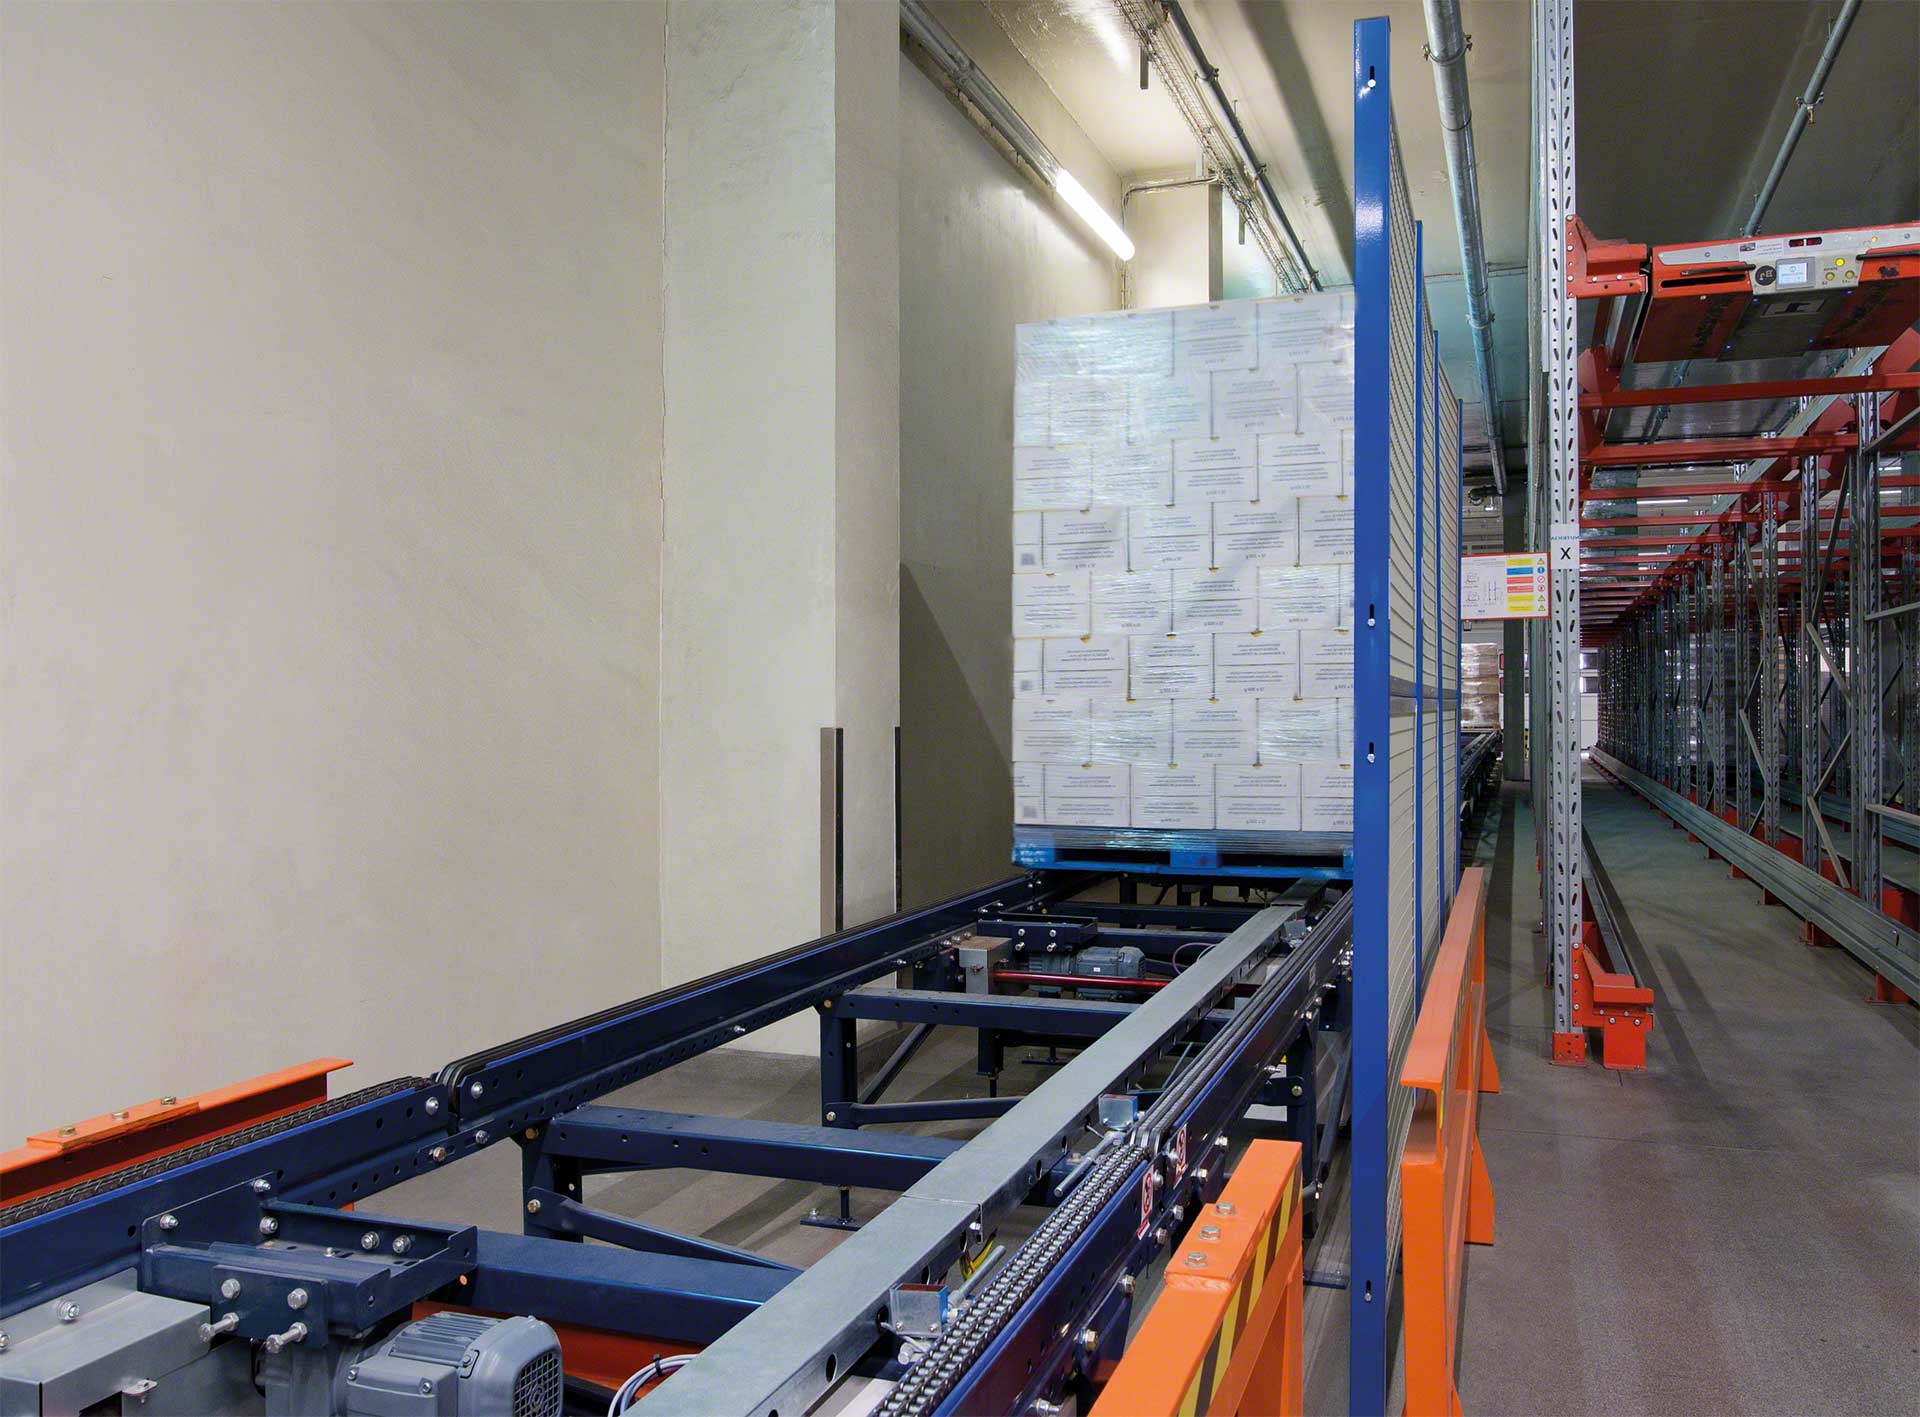 El transporte de cargas entre almacenes o plantas de producción forma parte de la logística interna de la empresa